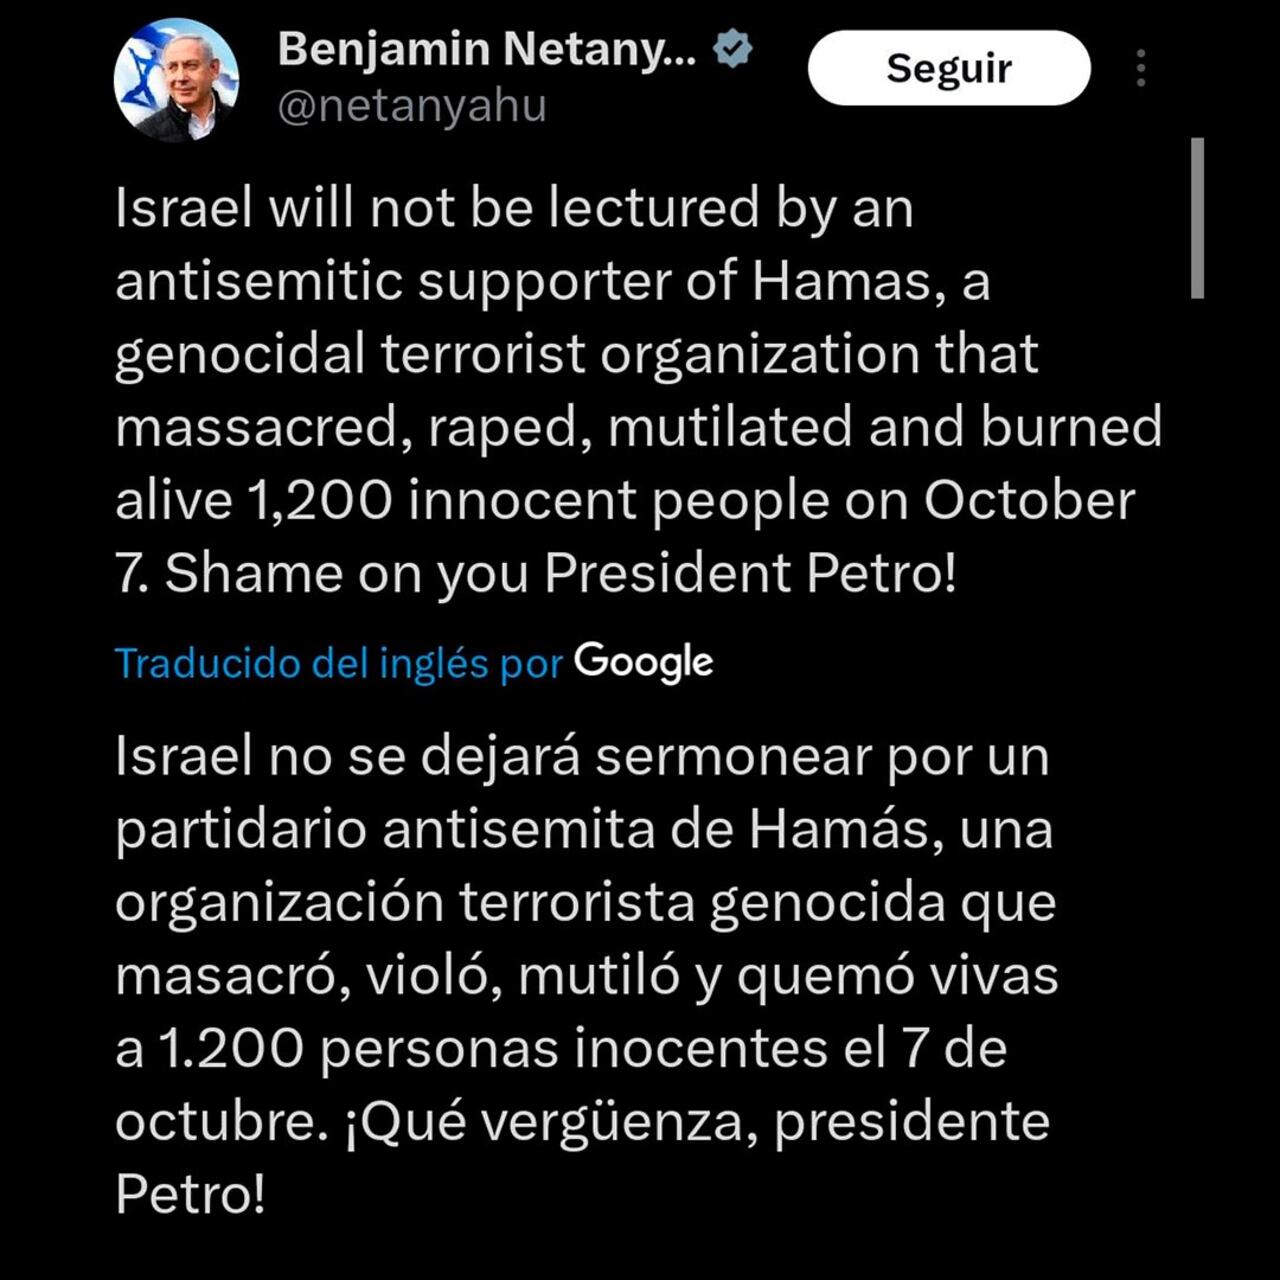 Mensaje Netanyahu contra Petro